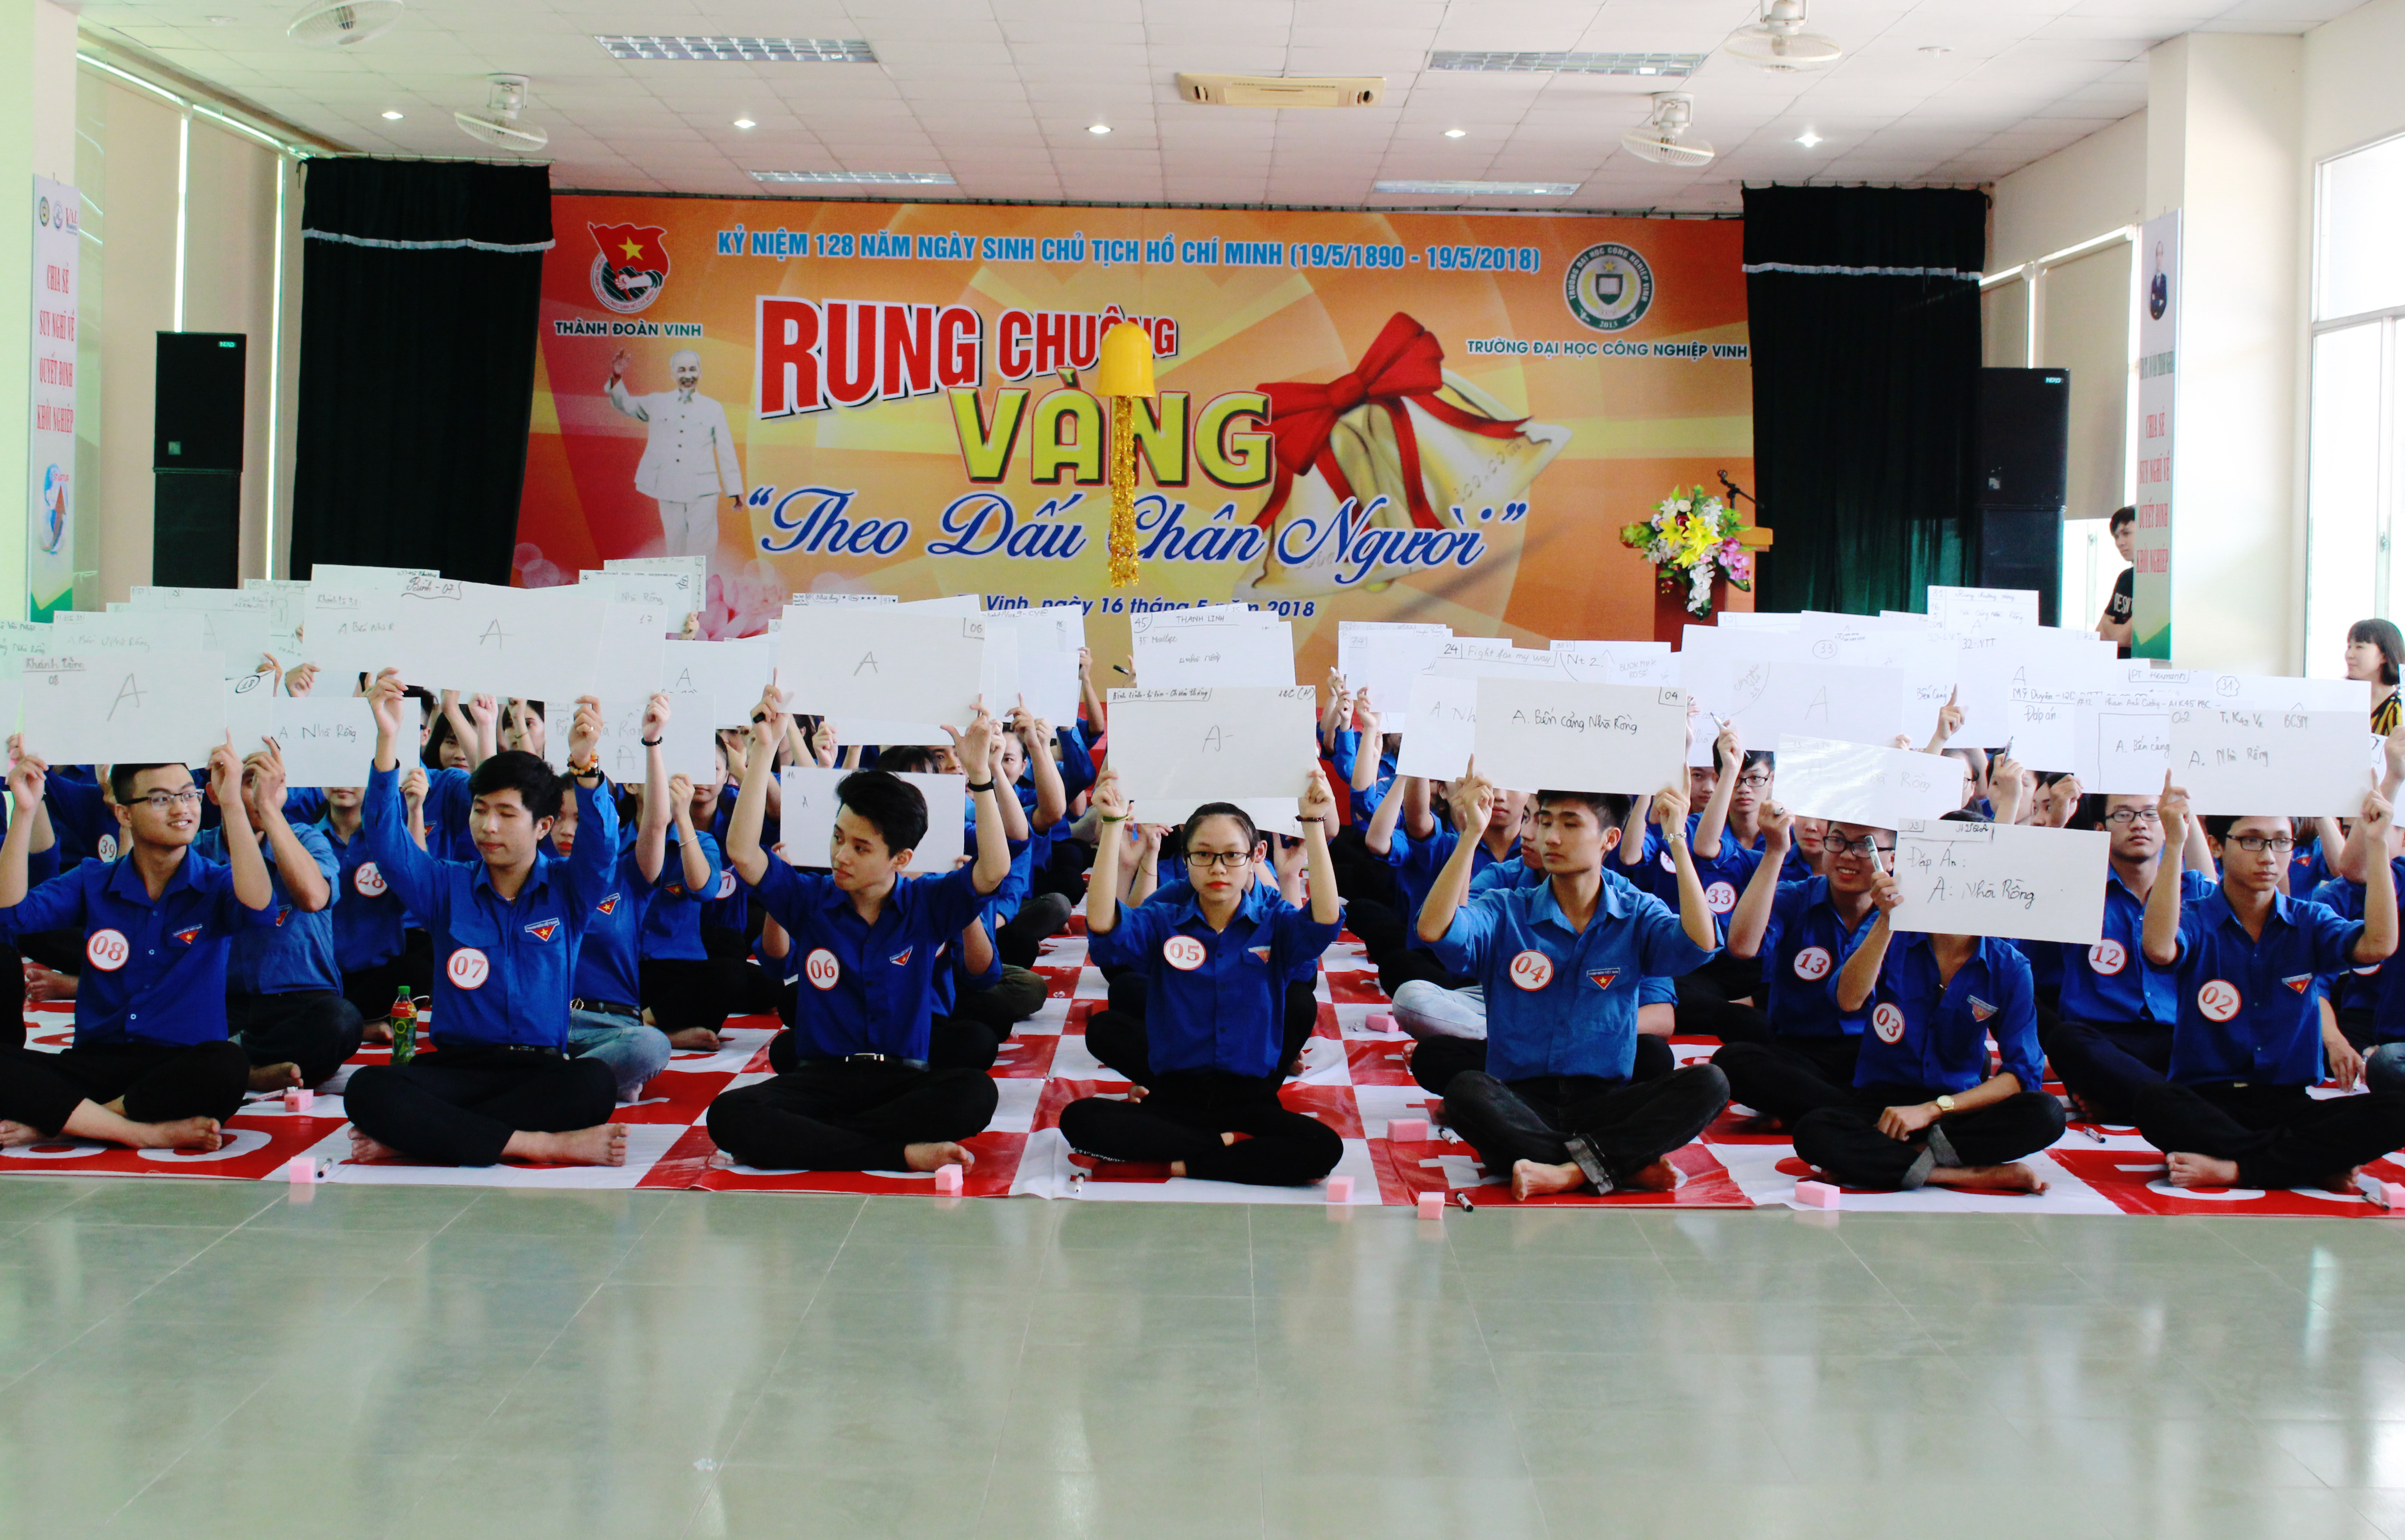 100 em học sinh đến từ các trường THPT, TC, CĐ trên địa bàn thành phố Vinh tham gia hội thi Rung chuông vàng. Ảnh: Phương Thúy